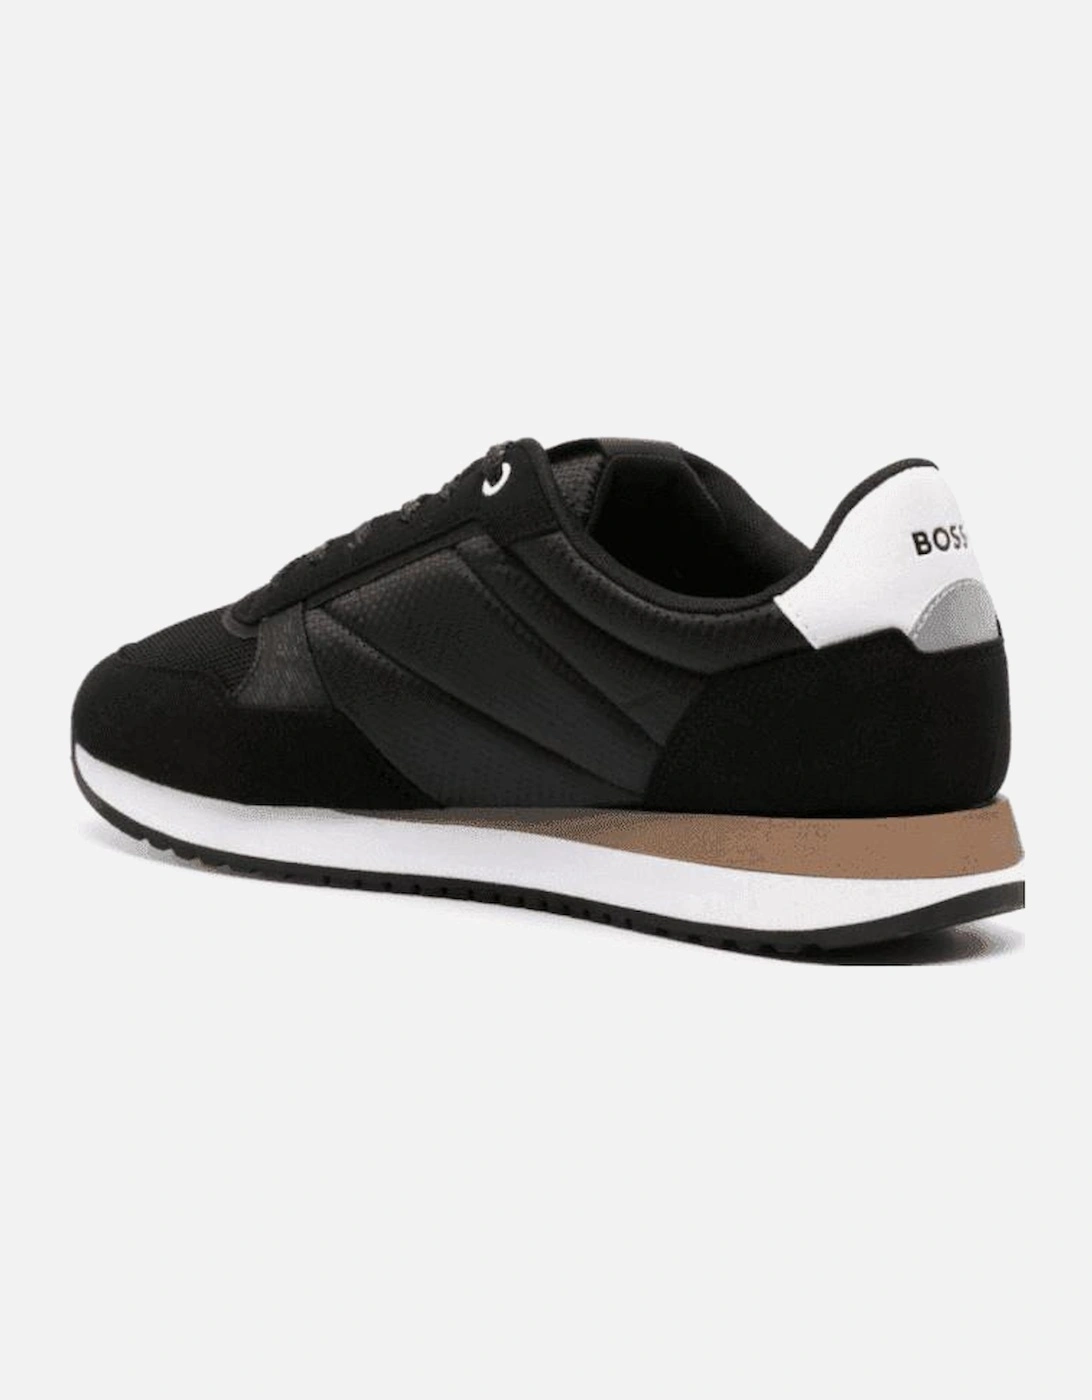 Kai_Runn Leather Black Sneaker/Trainer